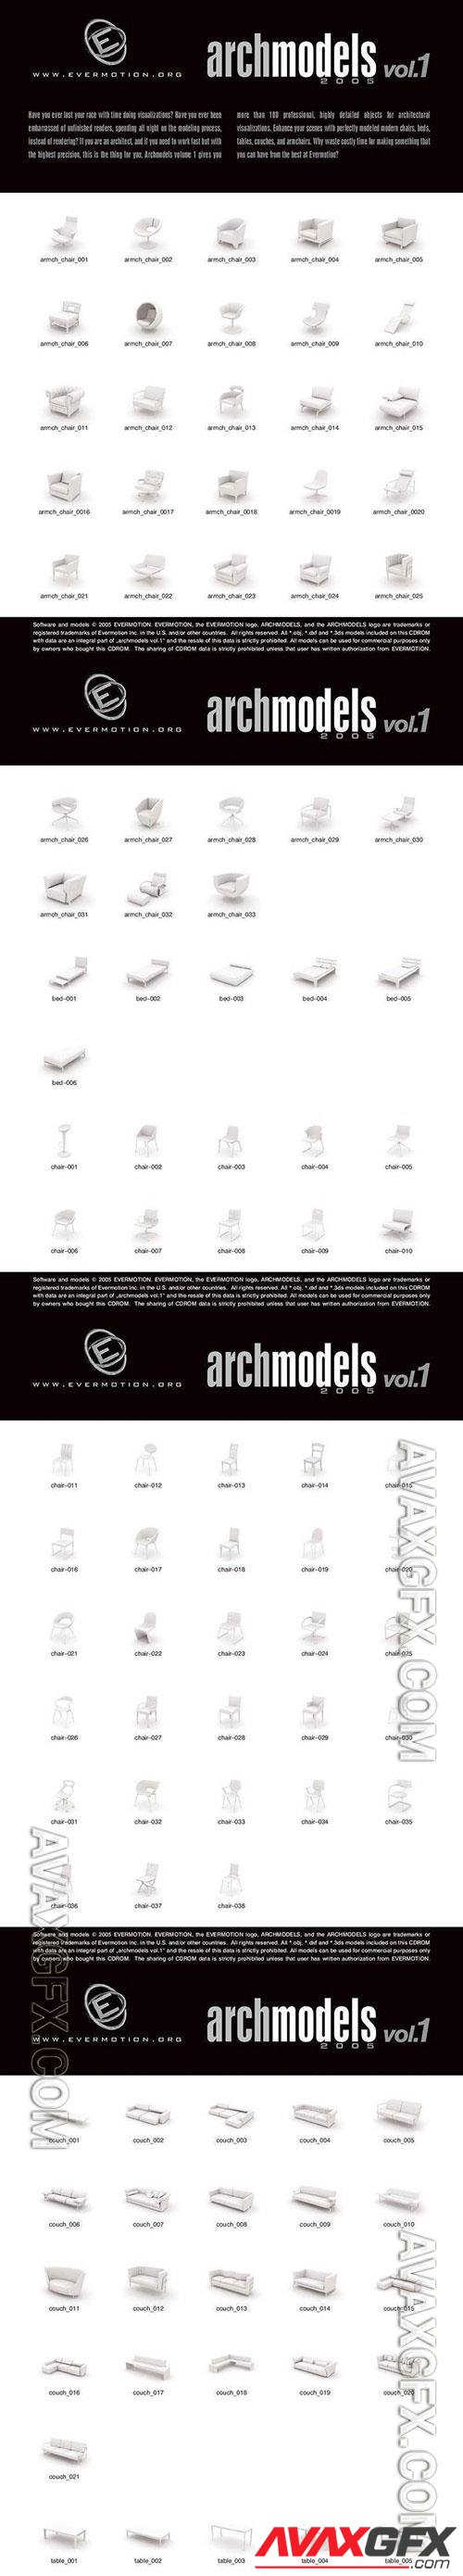 3D Models Evermotion Archmodels v 001